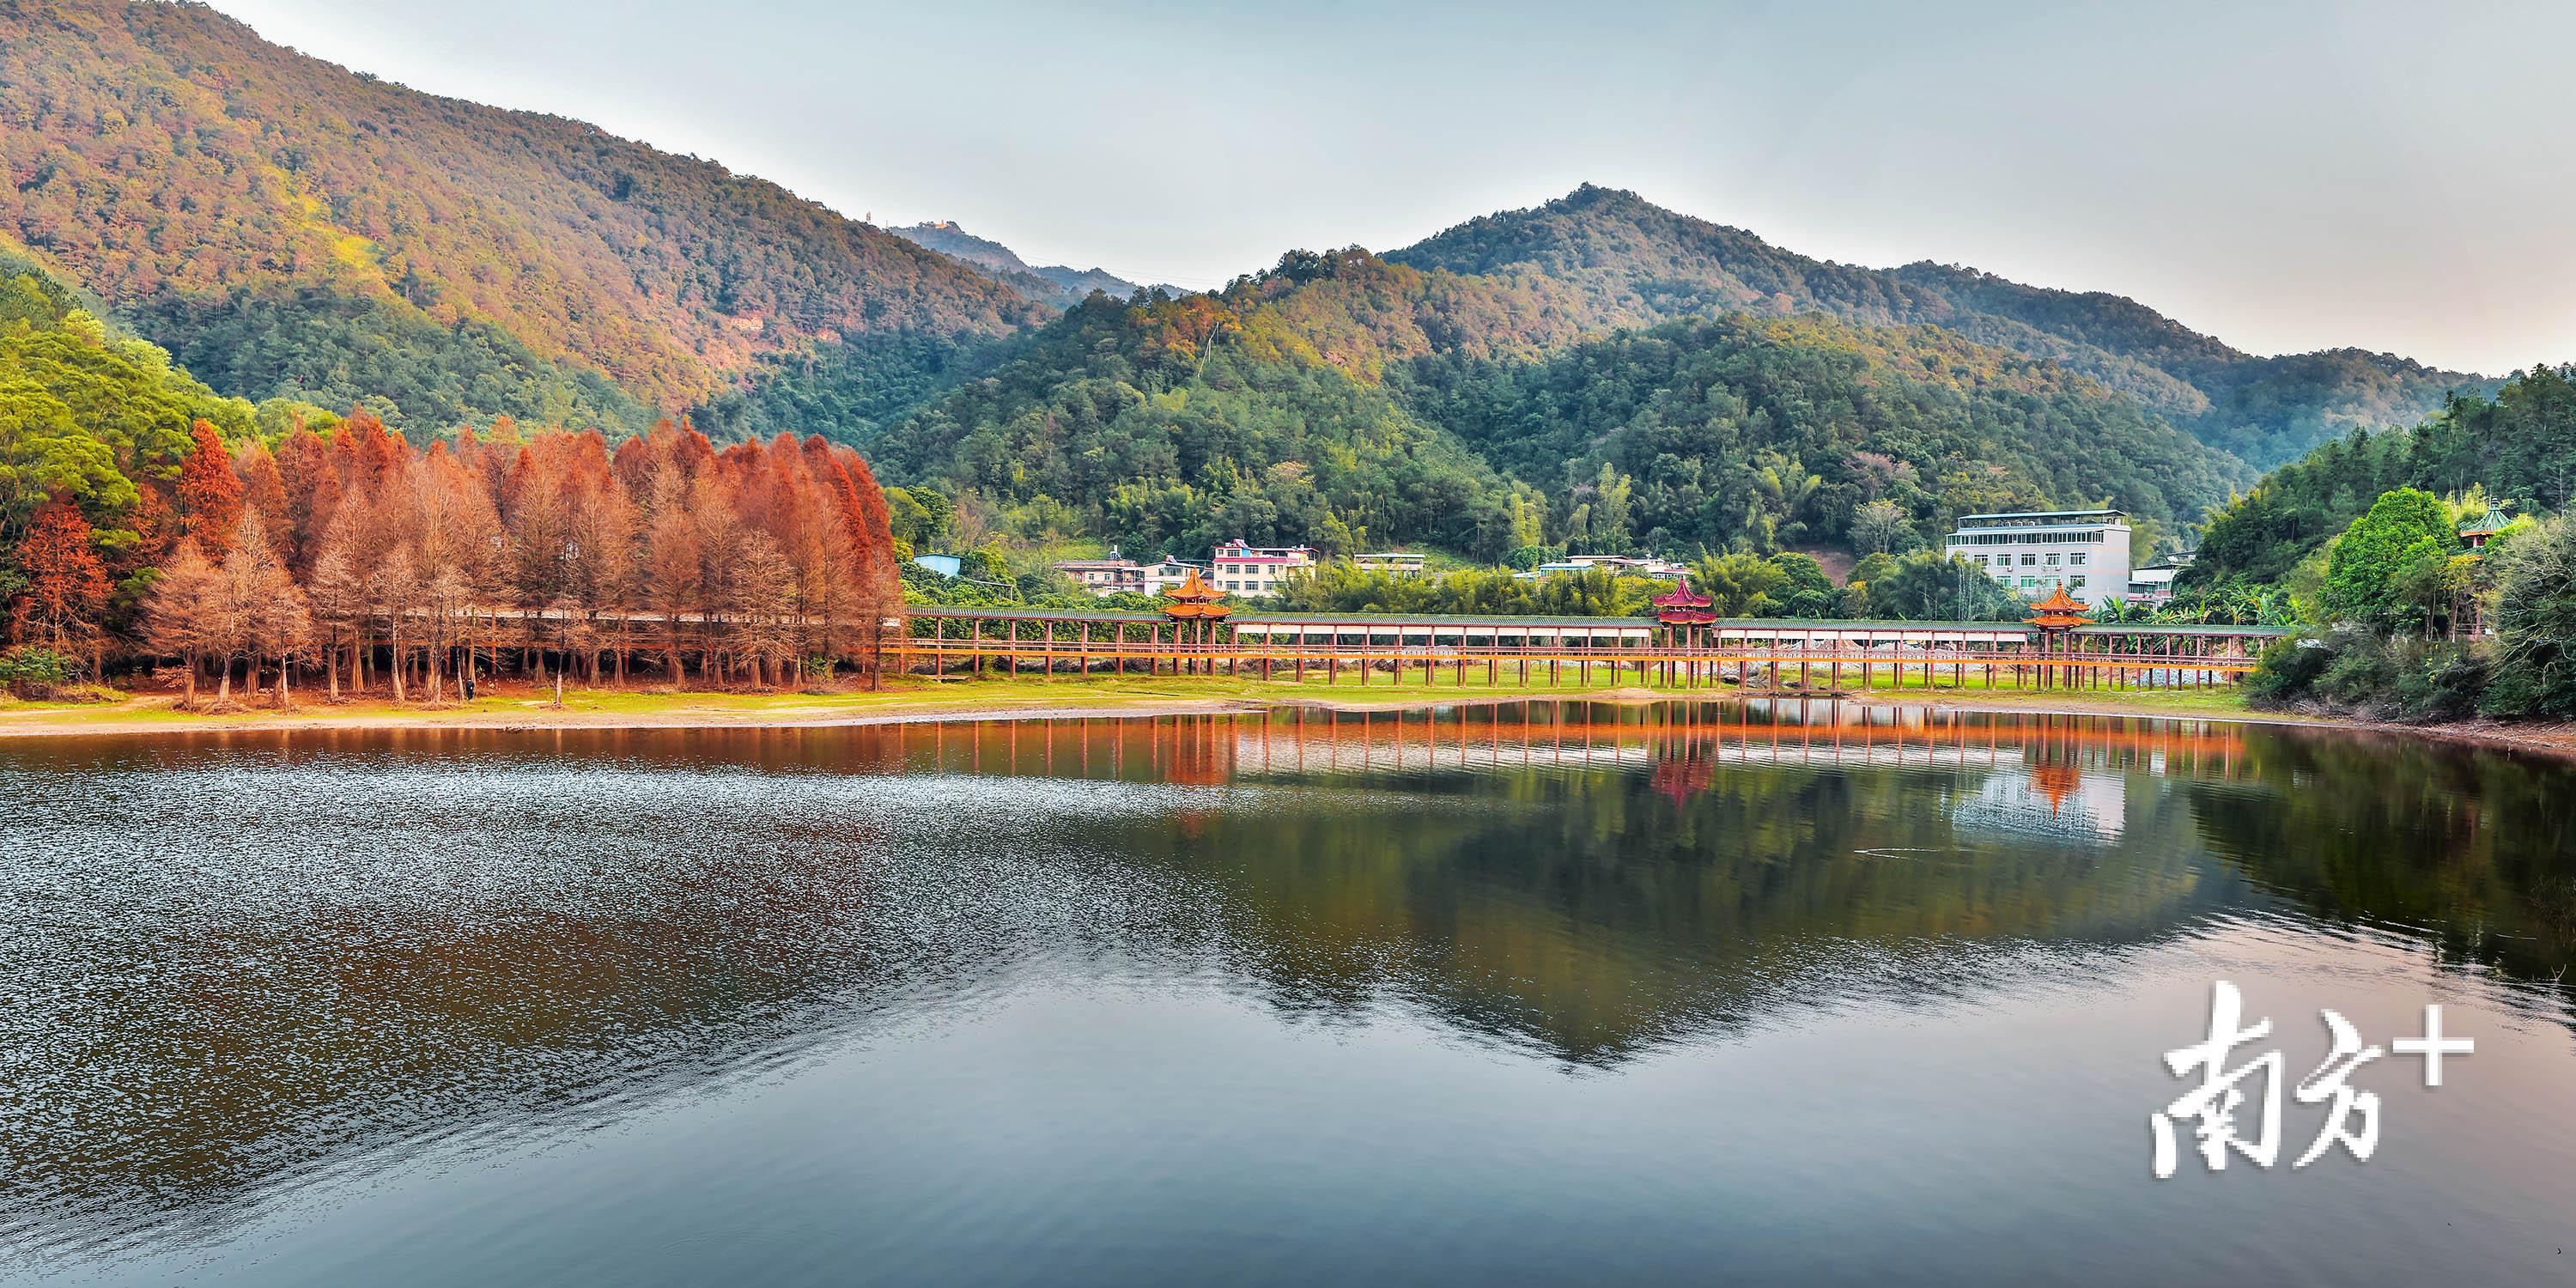 梅州泮坑旅游风景区素有“梅南胜境”的美誉，是假日休闲旅游的胜地。    南方日报记者 何森垚 摄